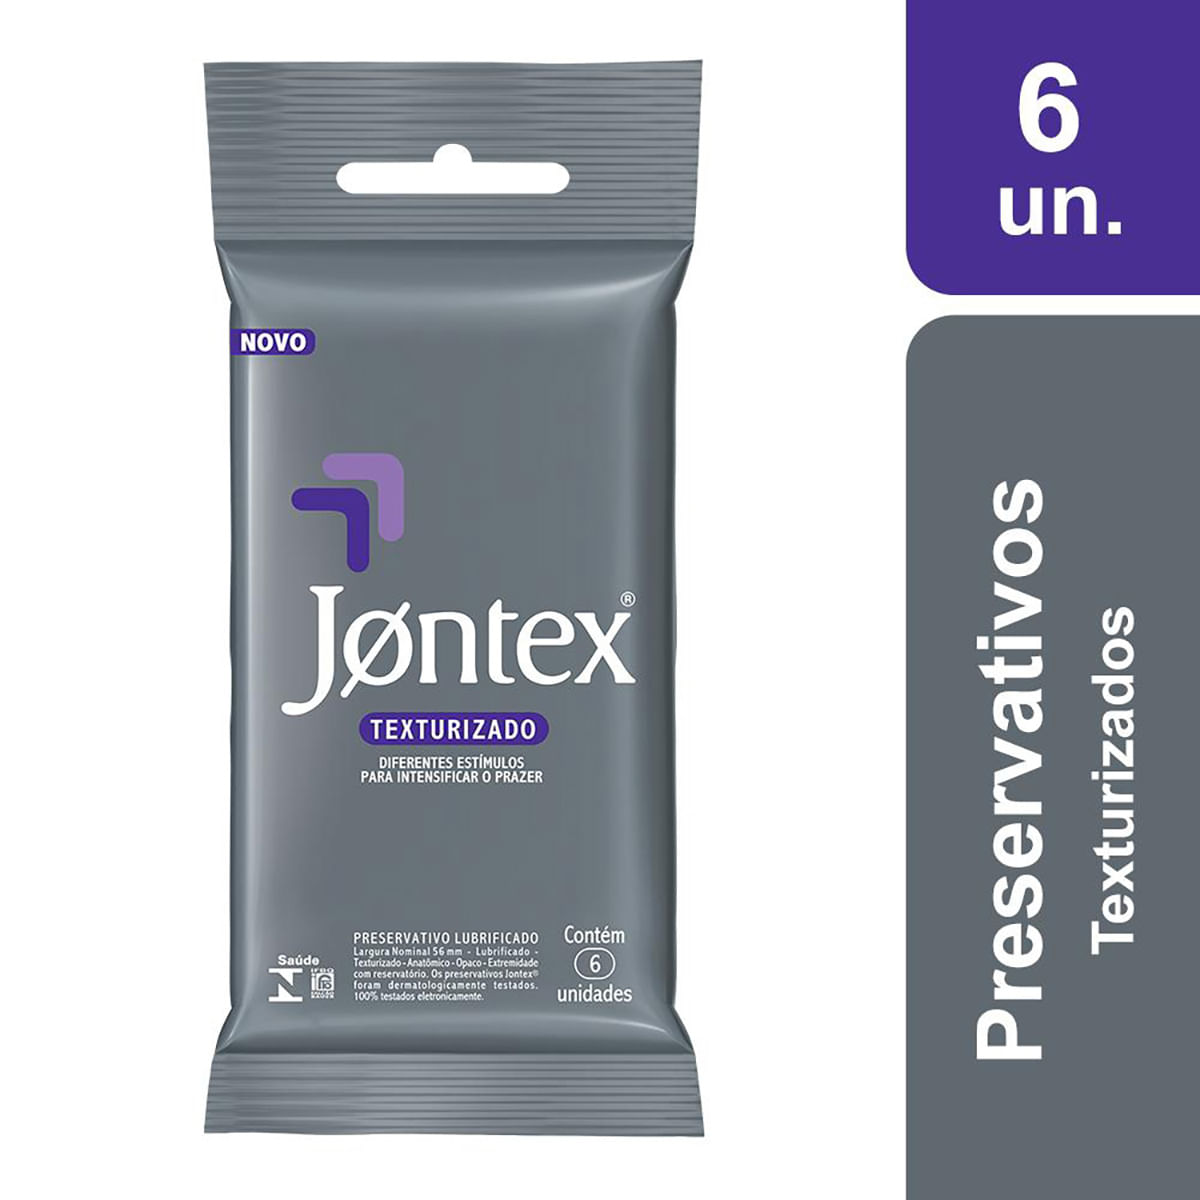 Preservativos Lubrificados Sensation Texturizado com 6 unidades Jontex